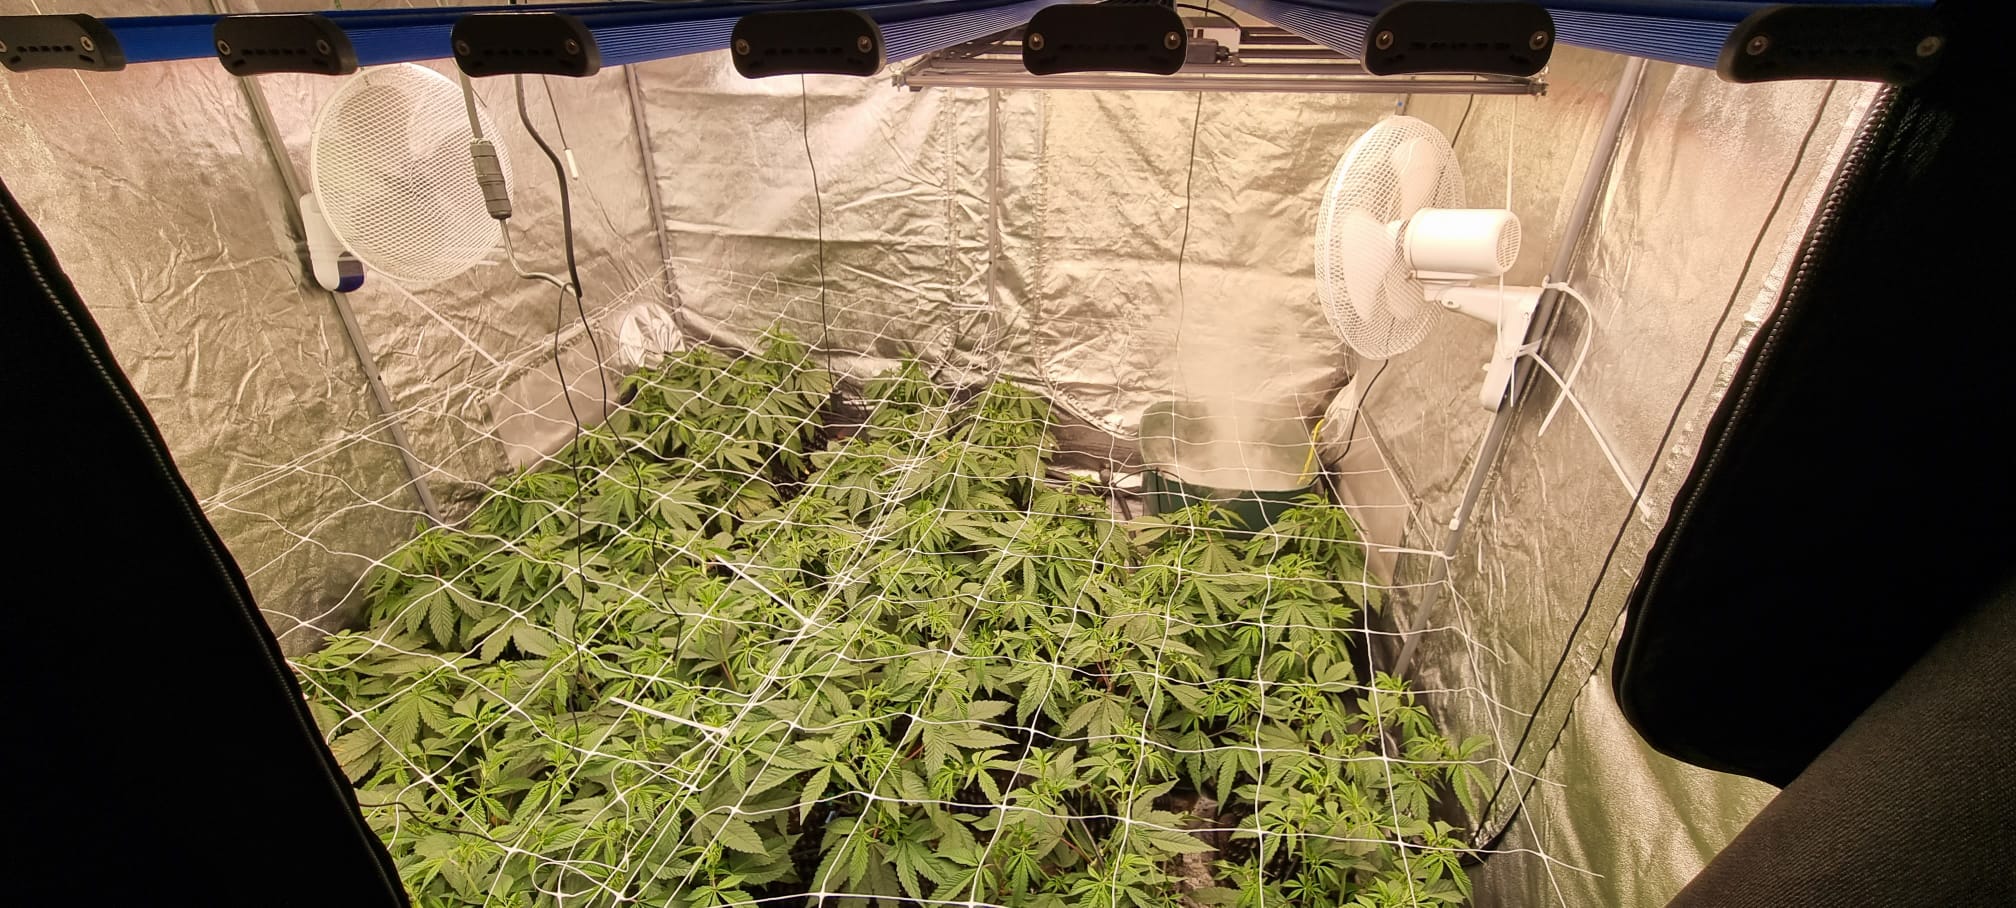 Durchsuchungen in 4 Kreisen: Kiloweise Hasch, Hunderte Marihuanapflanzen und 26.000 € gesichert, 5 Haftbefehle vollstreckt